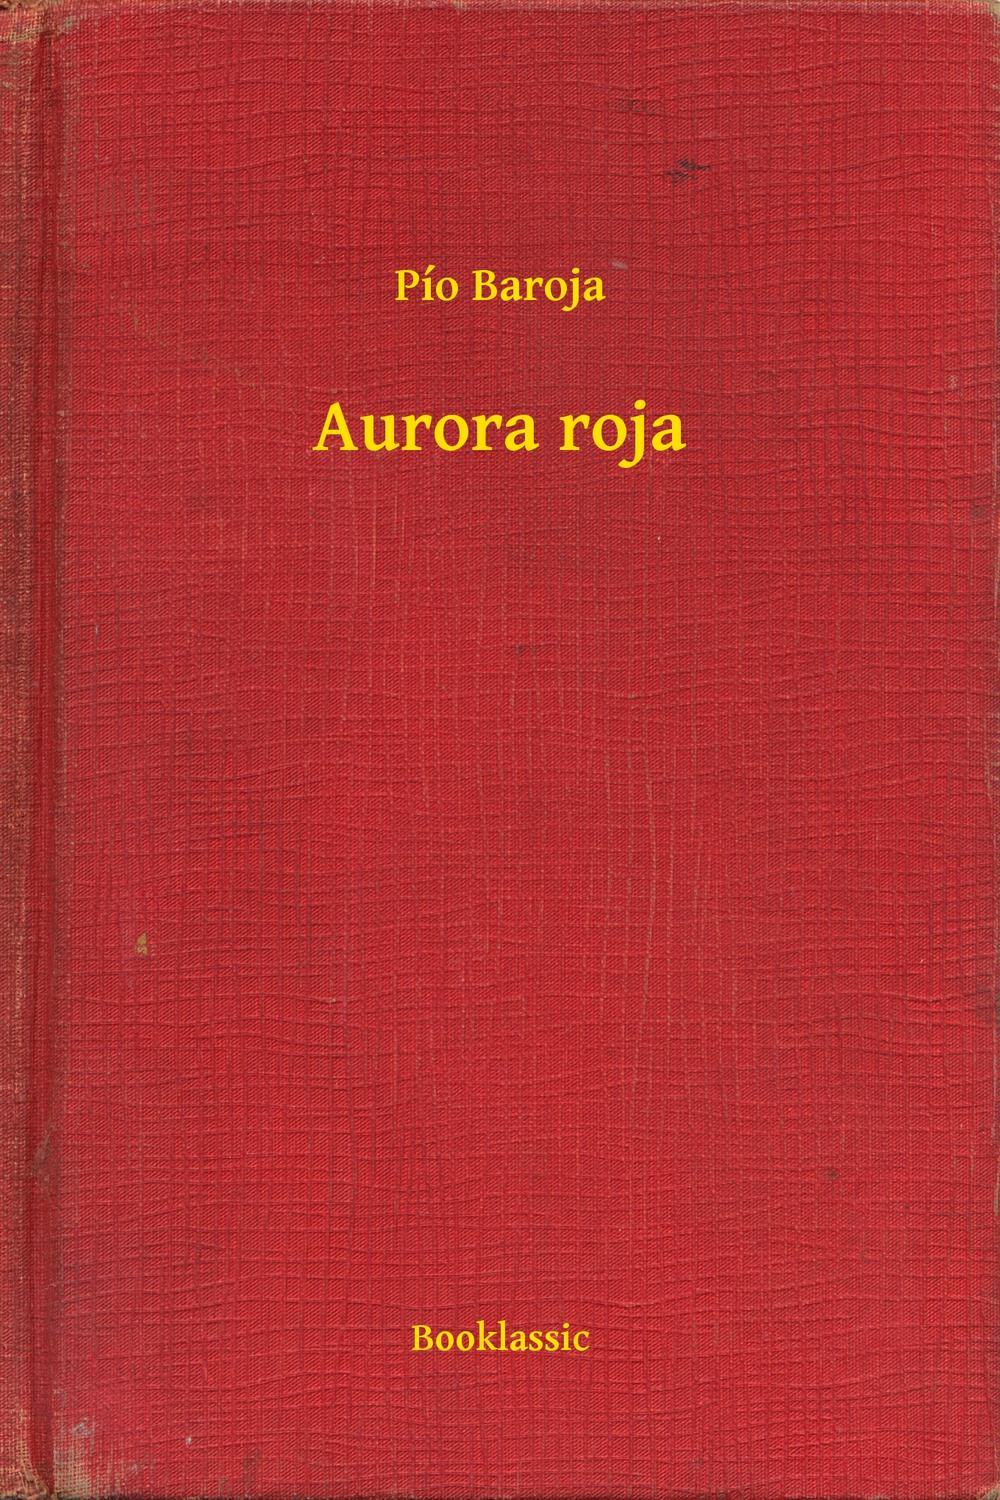 Aurora roja - Pío Baroja